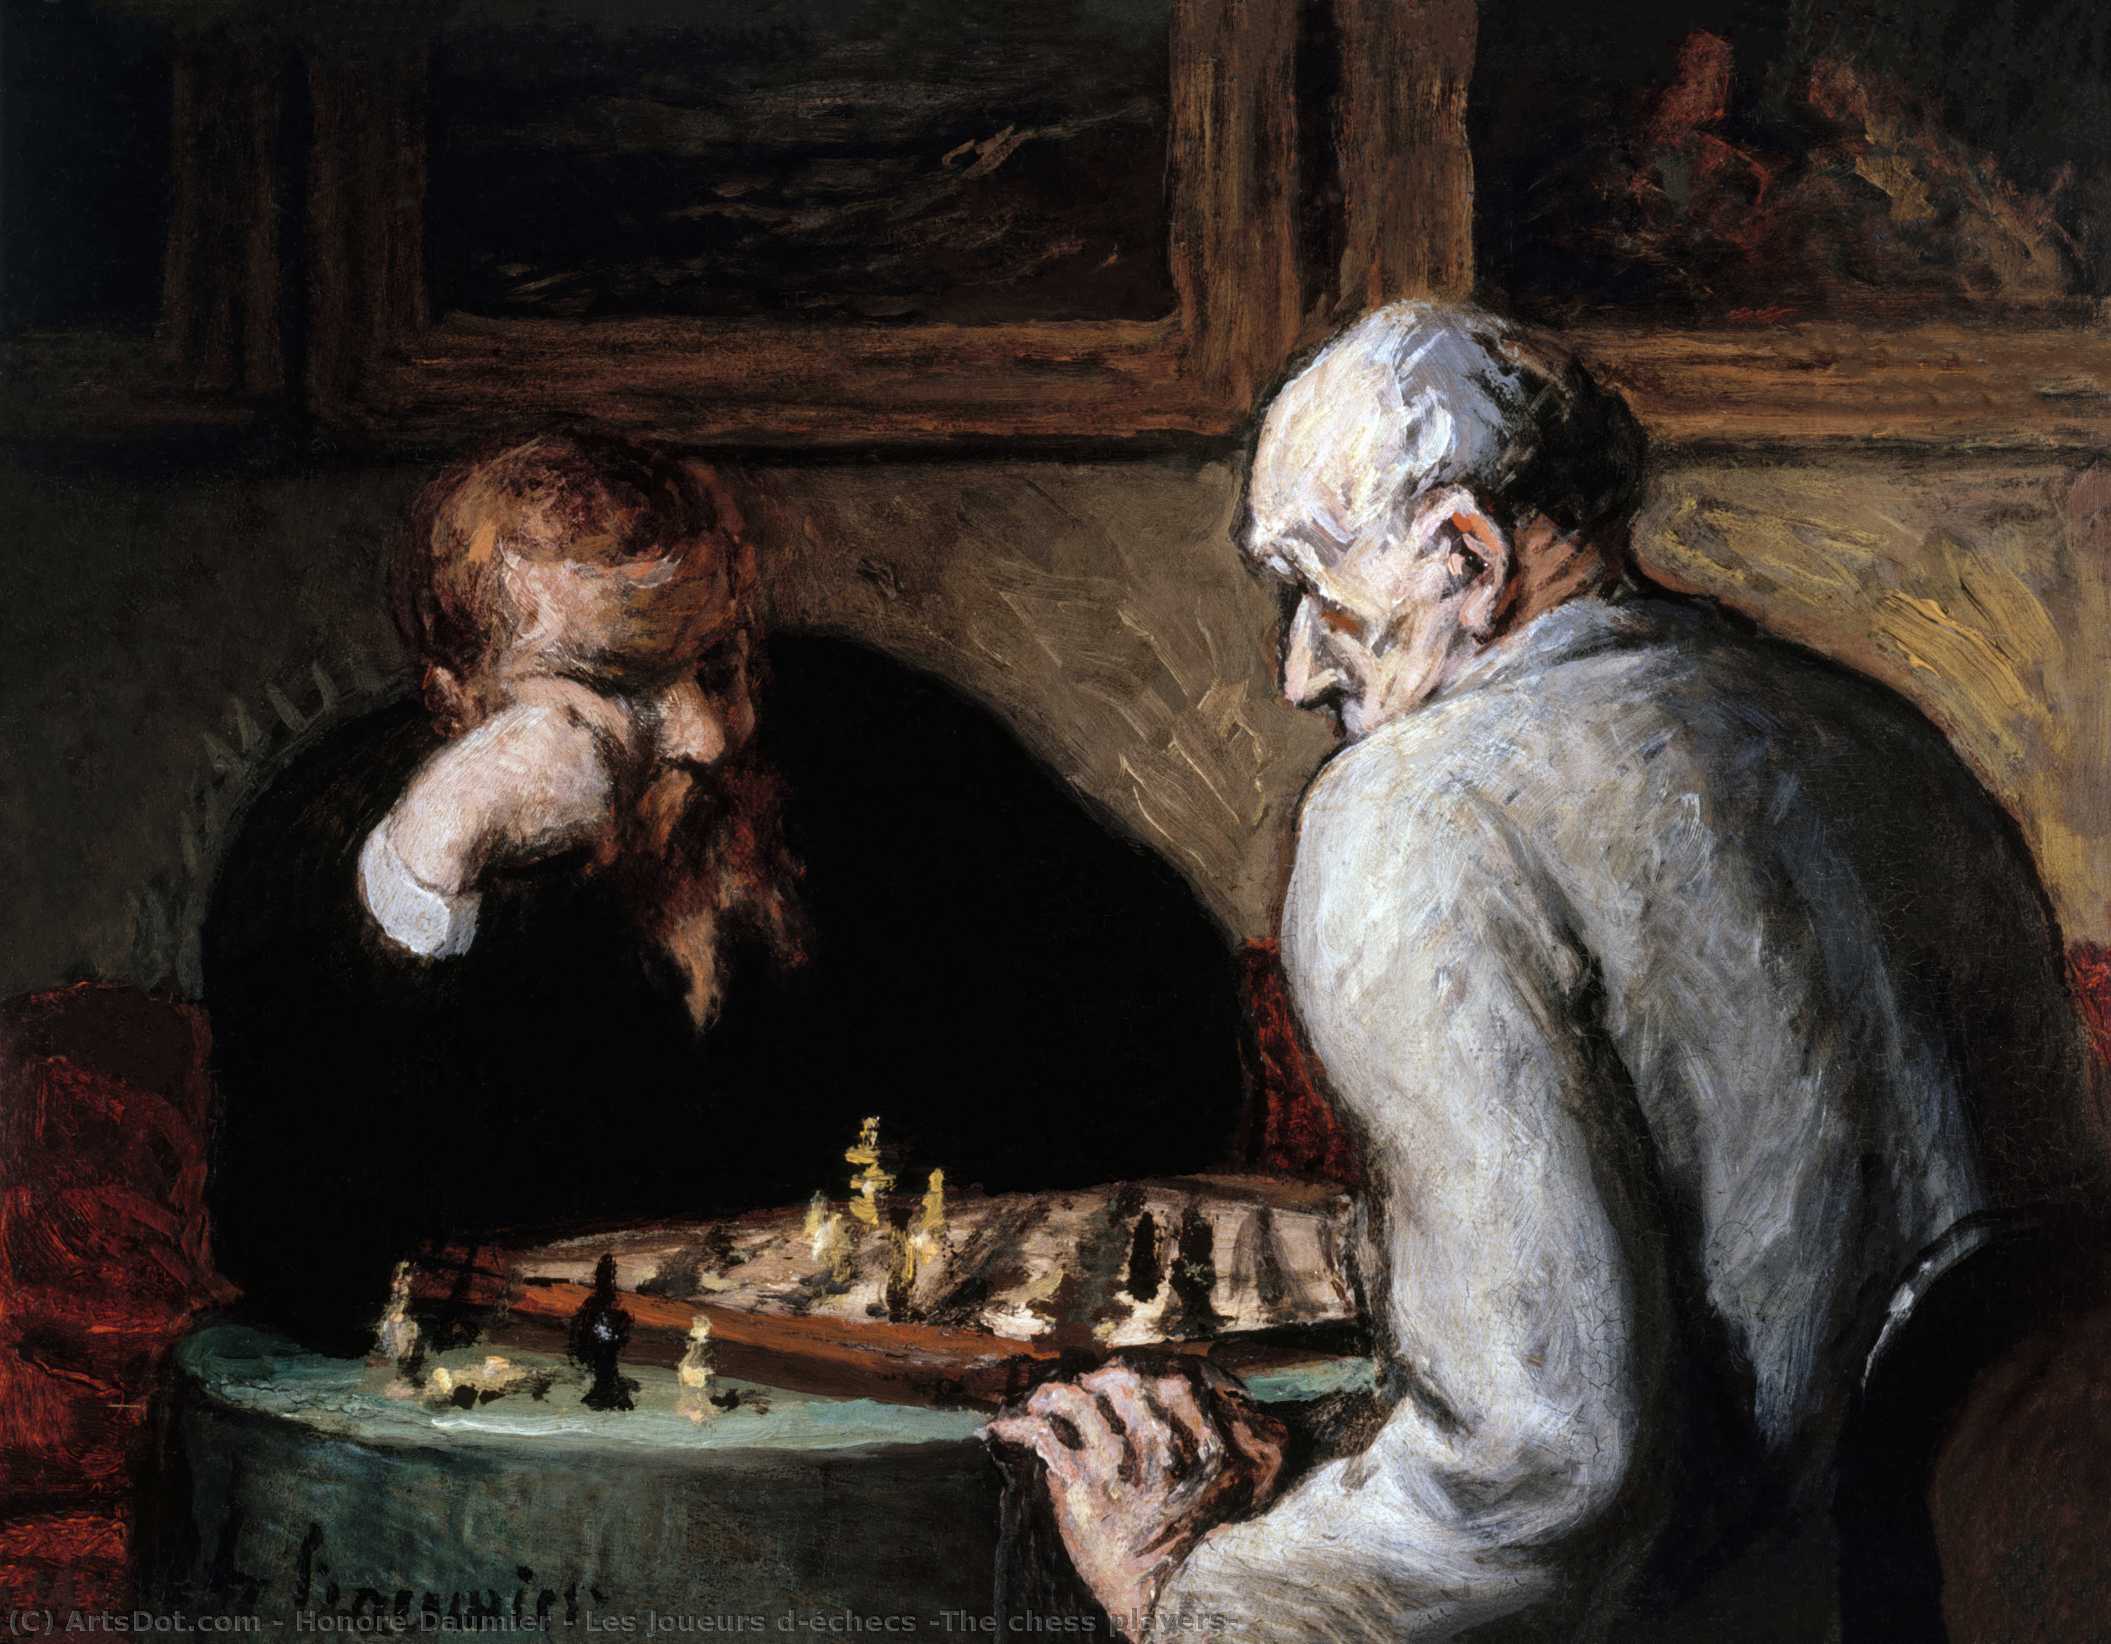 WikiOO.org - Encyclopedia of Fine Arts - Lukisan, Artwork Honoré Daumier - Les Joueurs d'échecs (The chess players)